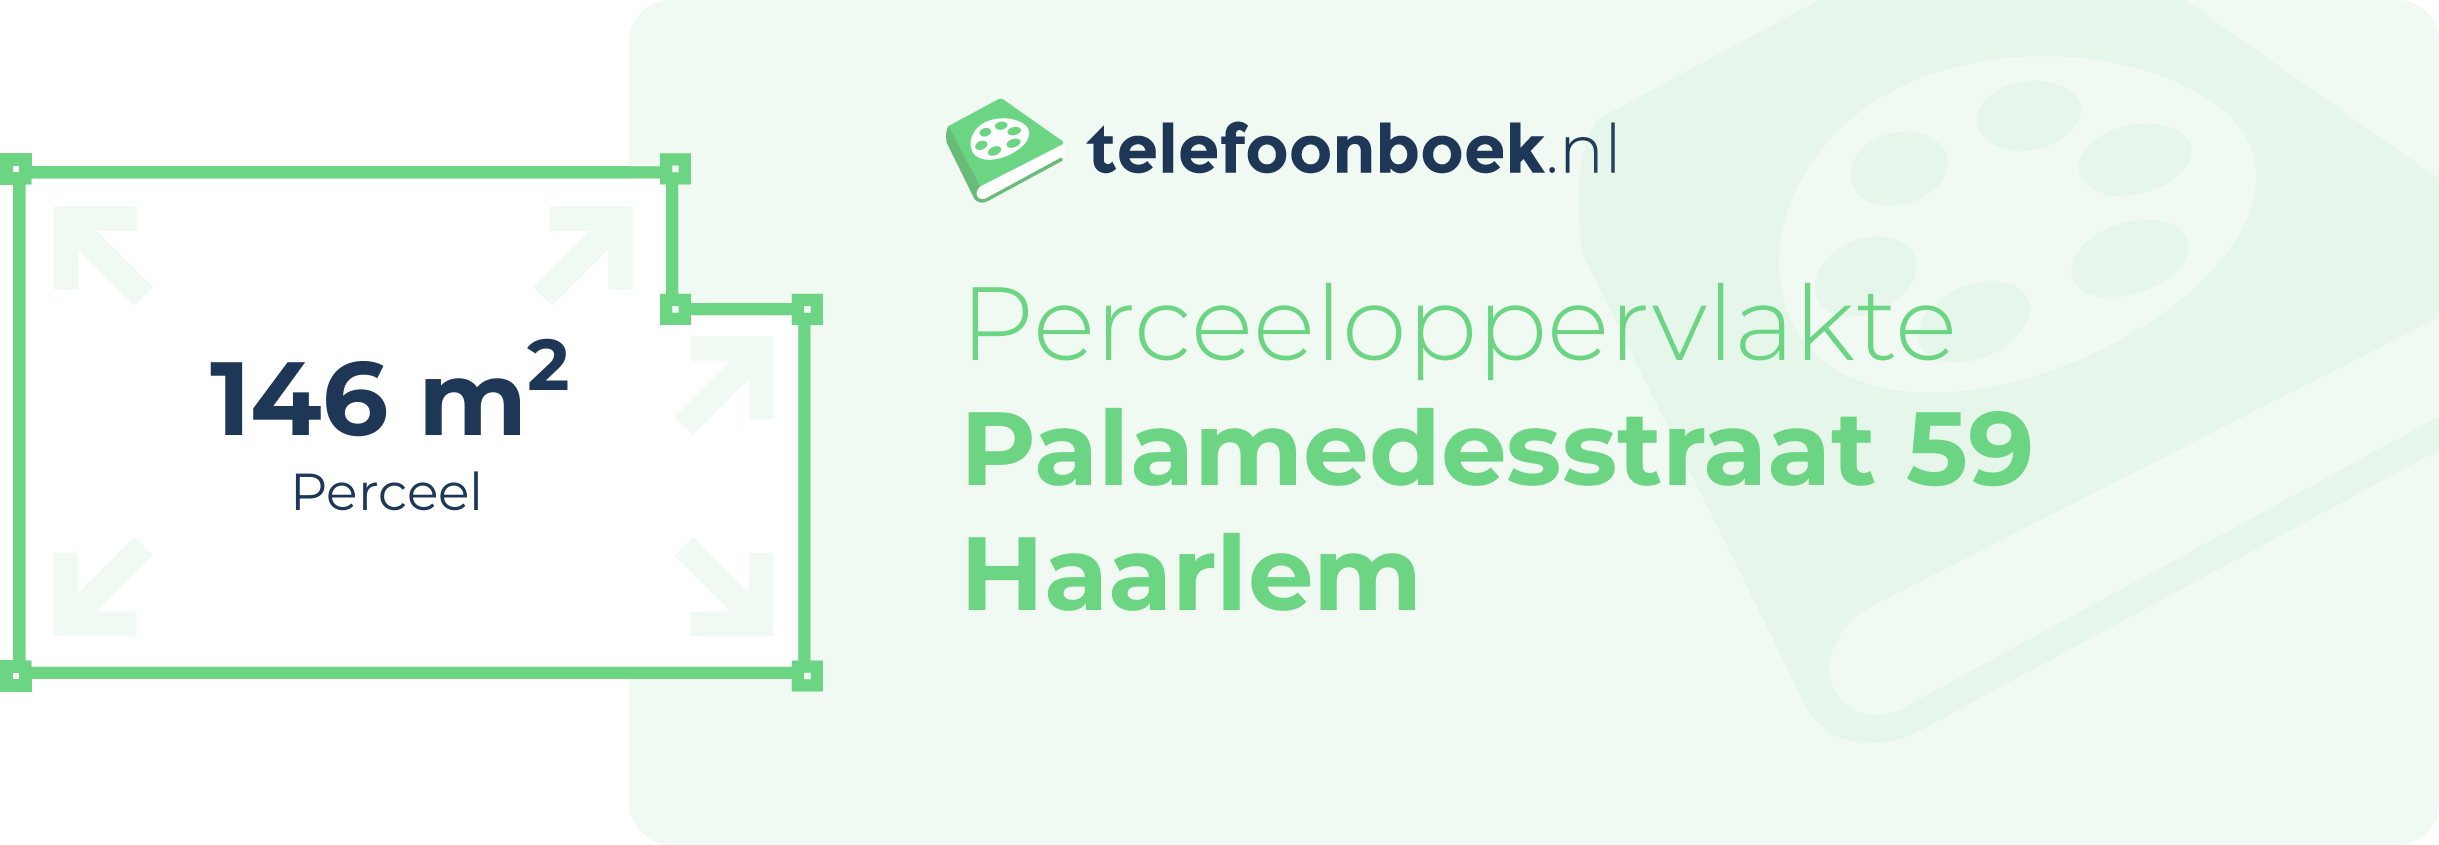 Perceeloppervlakte Palamedesstraat 59 Haarlem